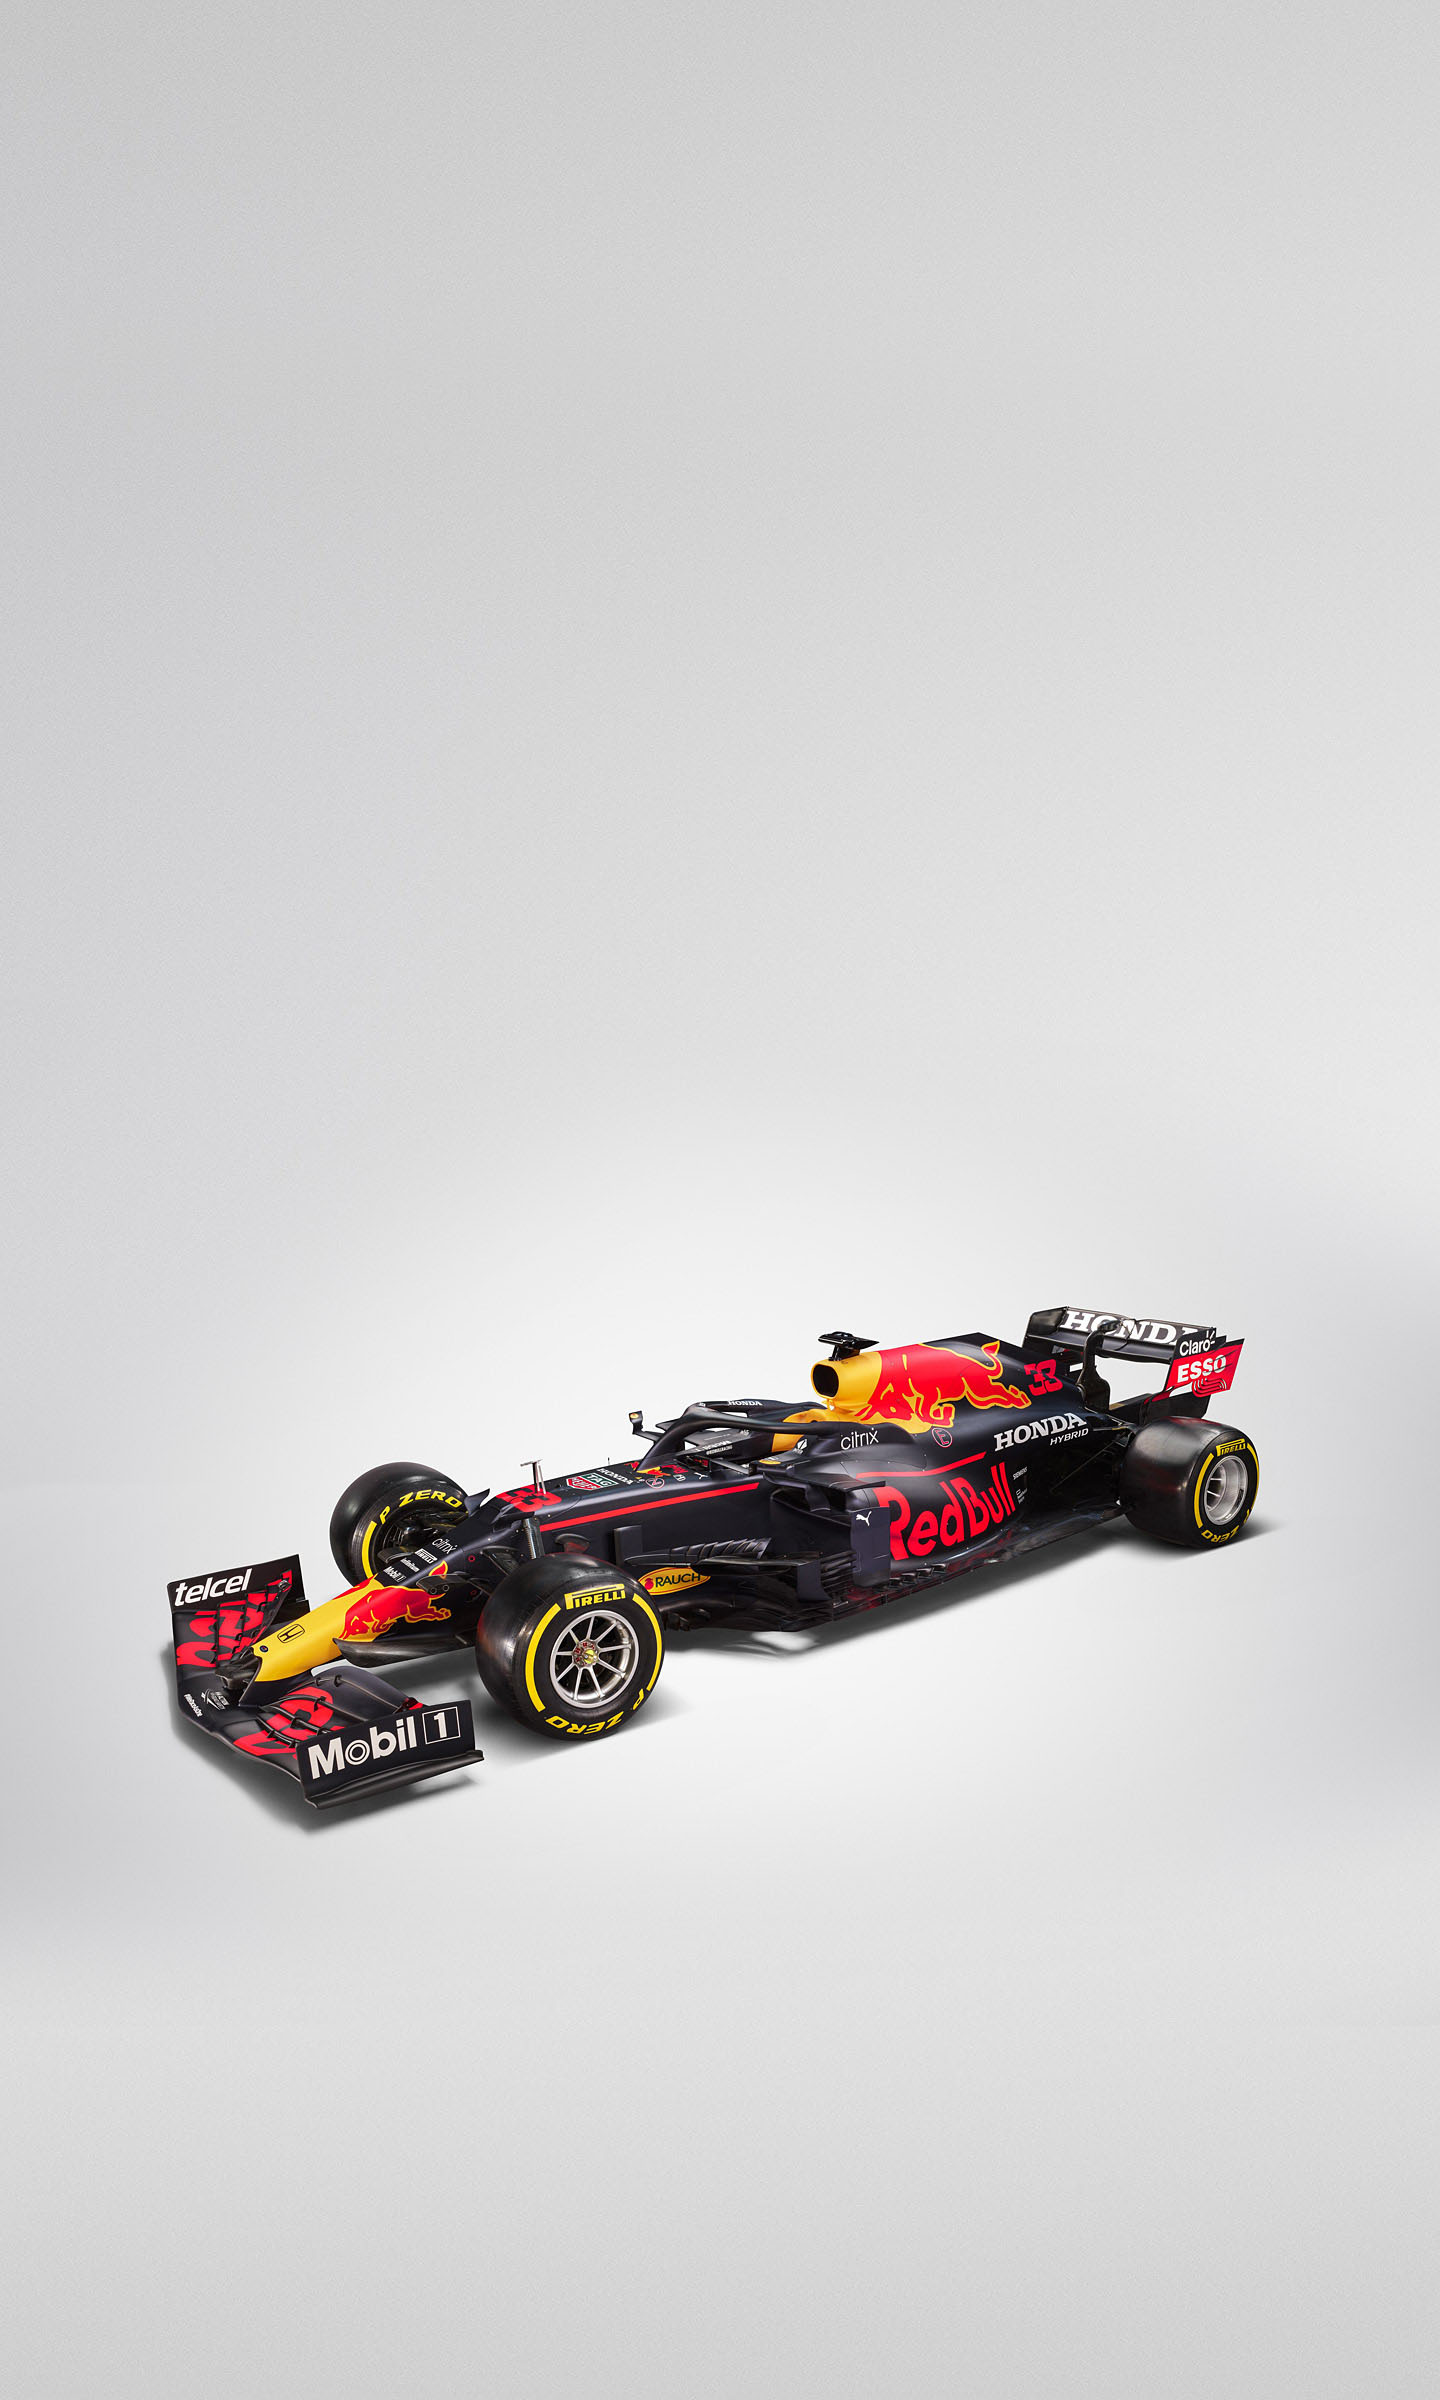  2021 Red Bull Racing RB16B Wallpaper.